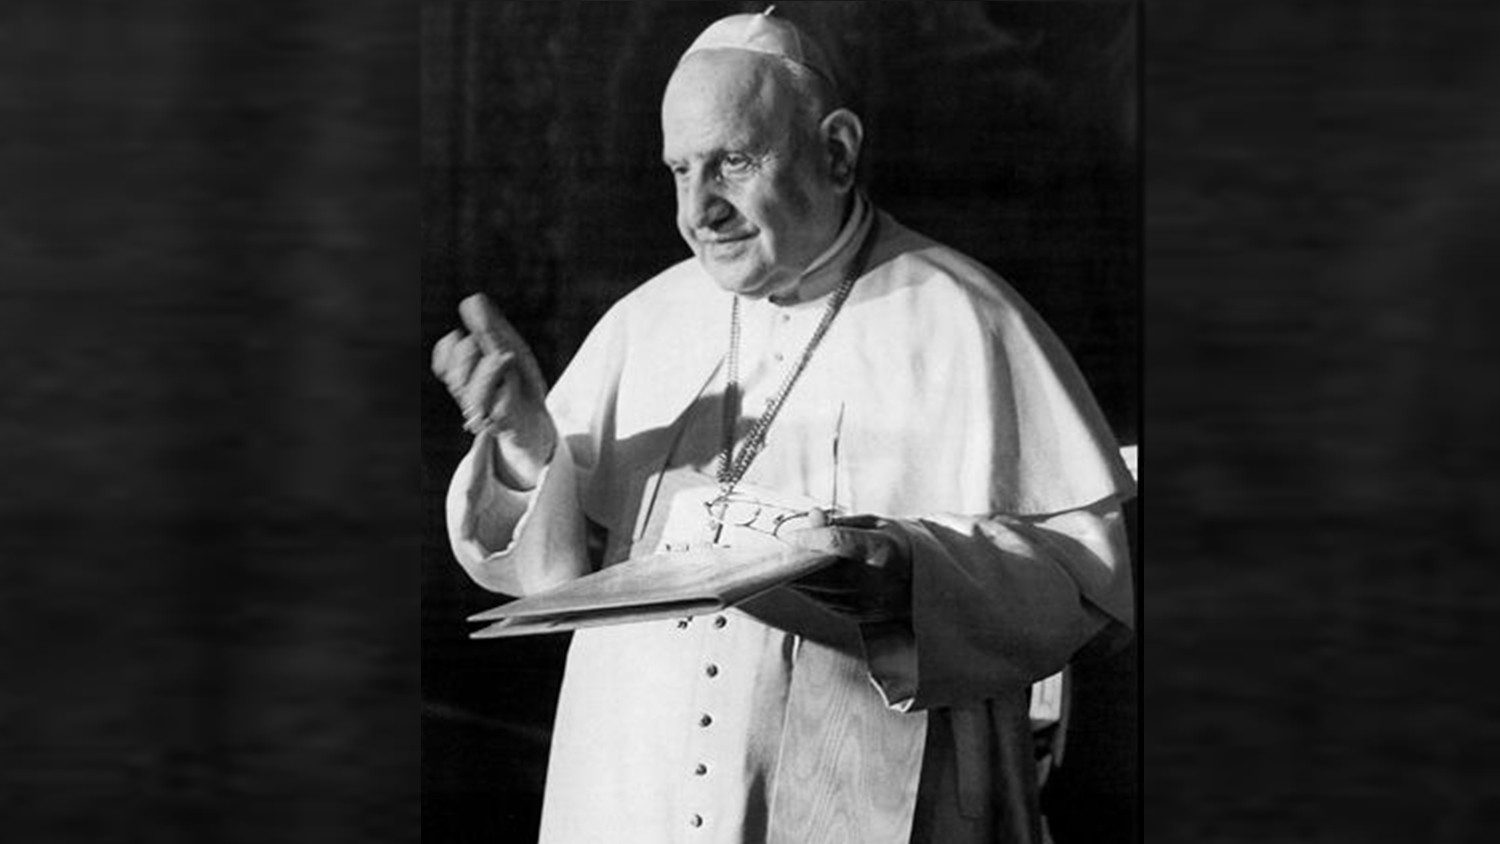 60 tahun yang lalu, Paus Yohanes XXIII meresmikan siaran radio harian untuk Afrika.